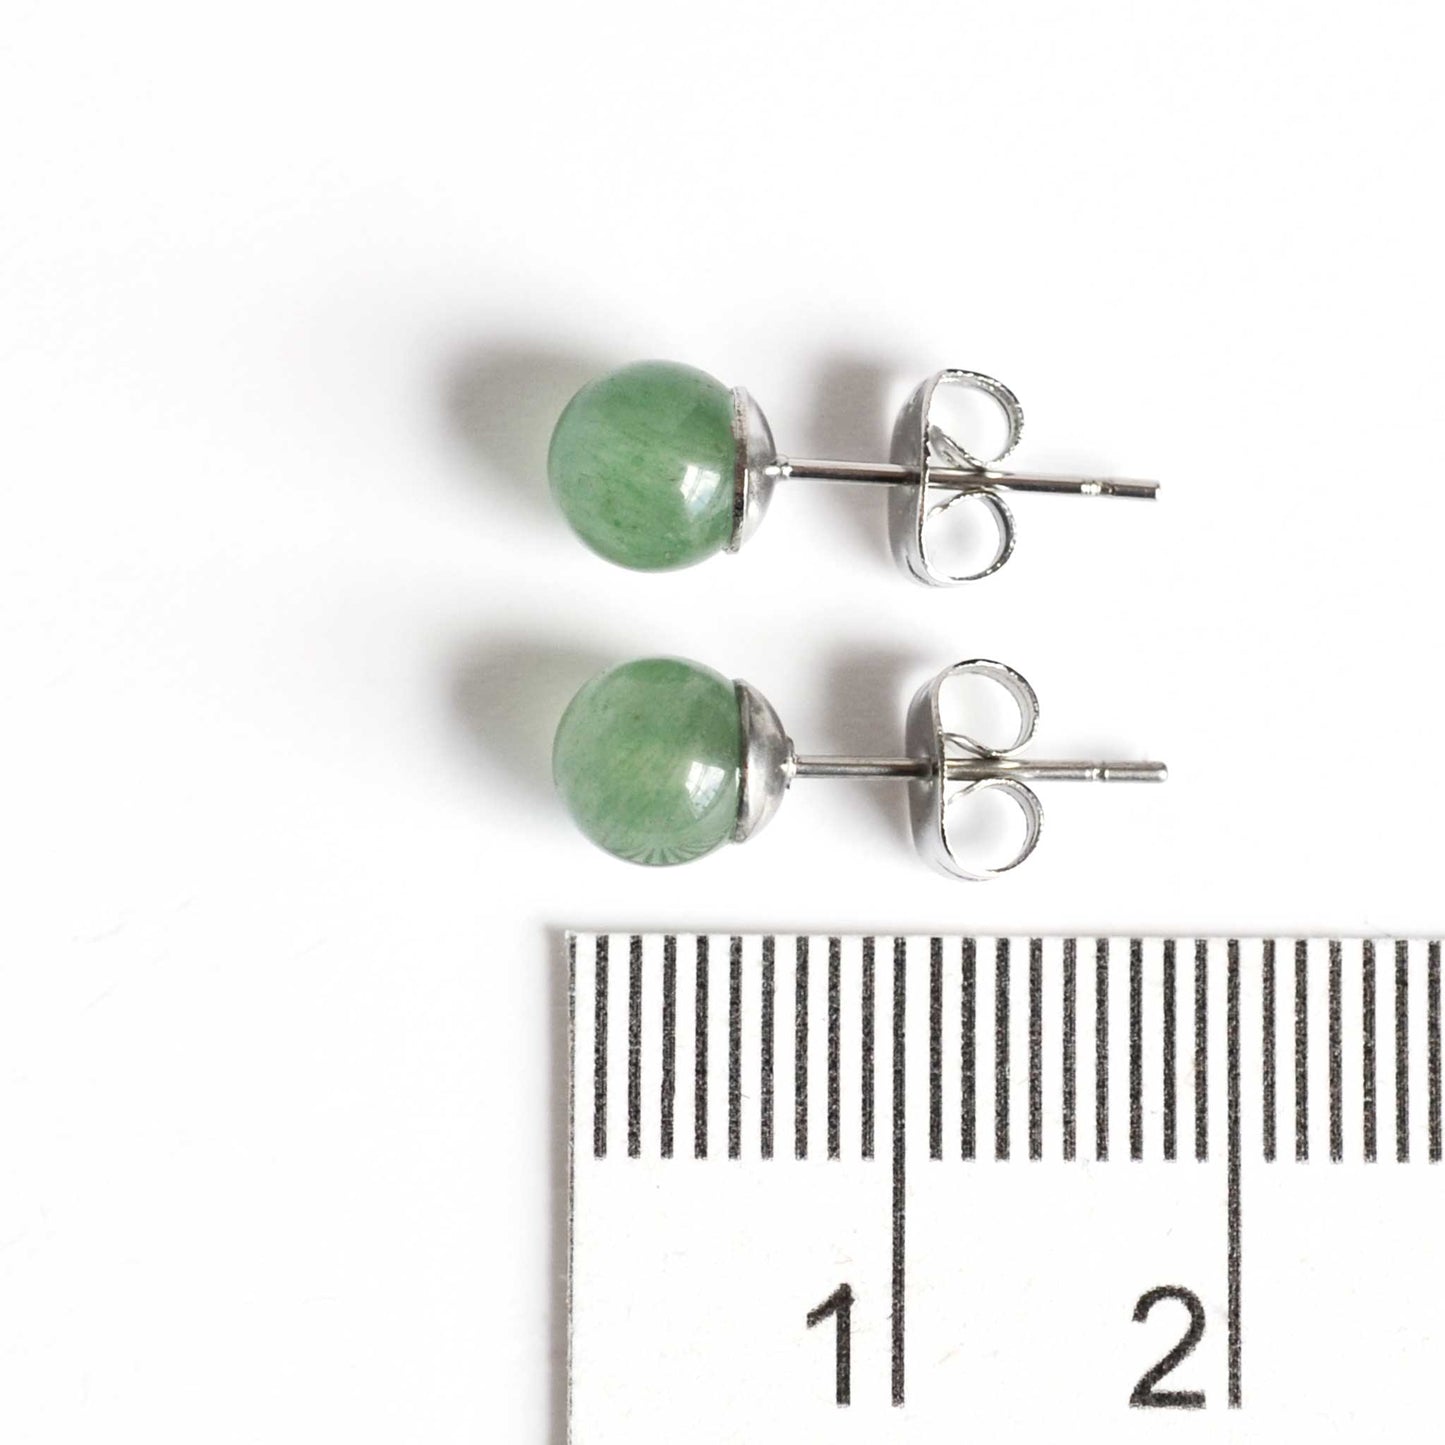 6mm Green Aventurine earrings next to ruler